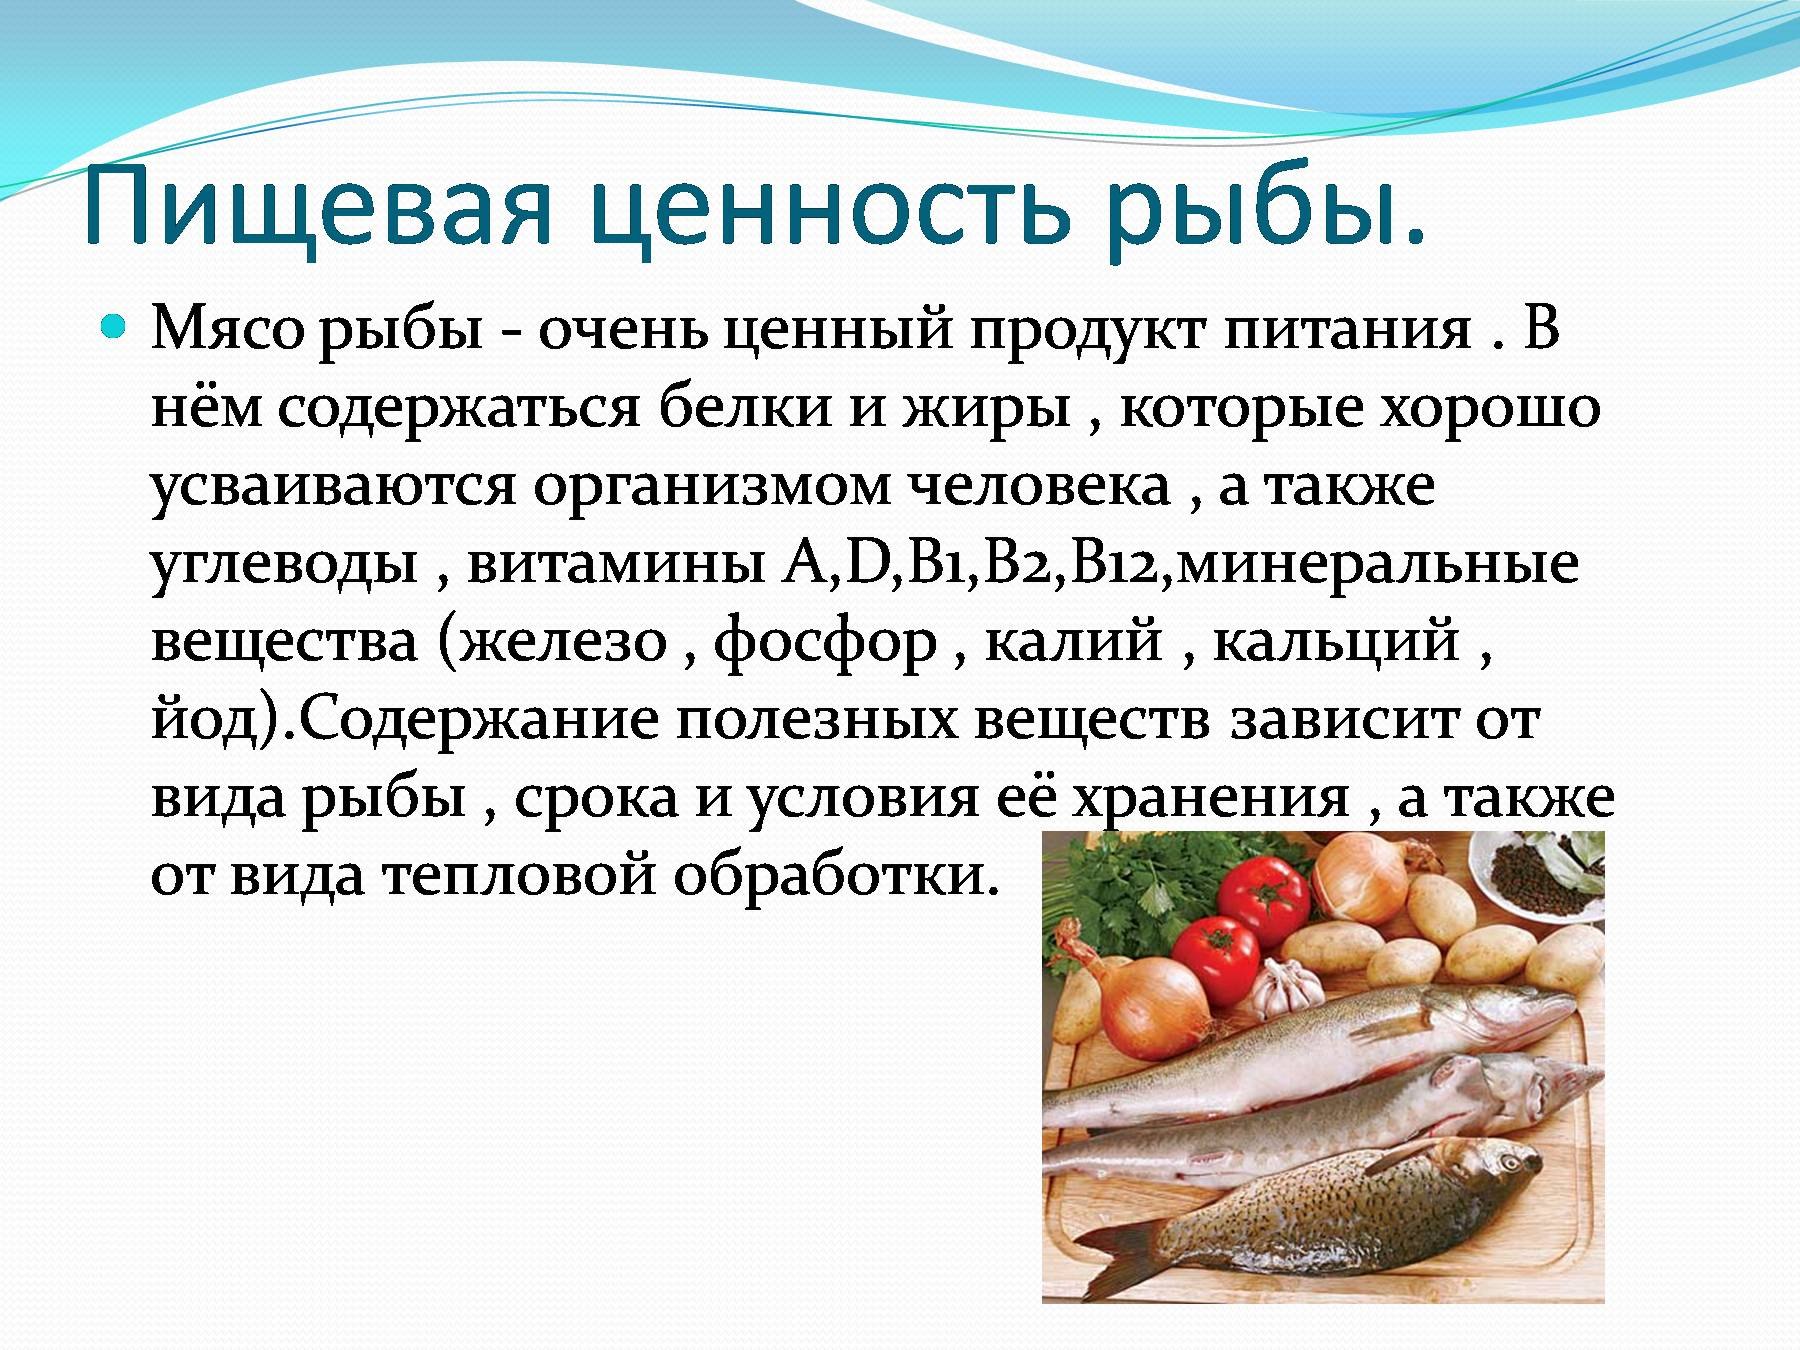 Рыба считается мясом